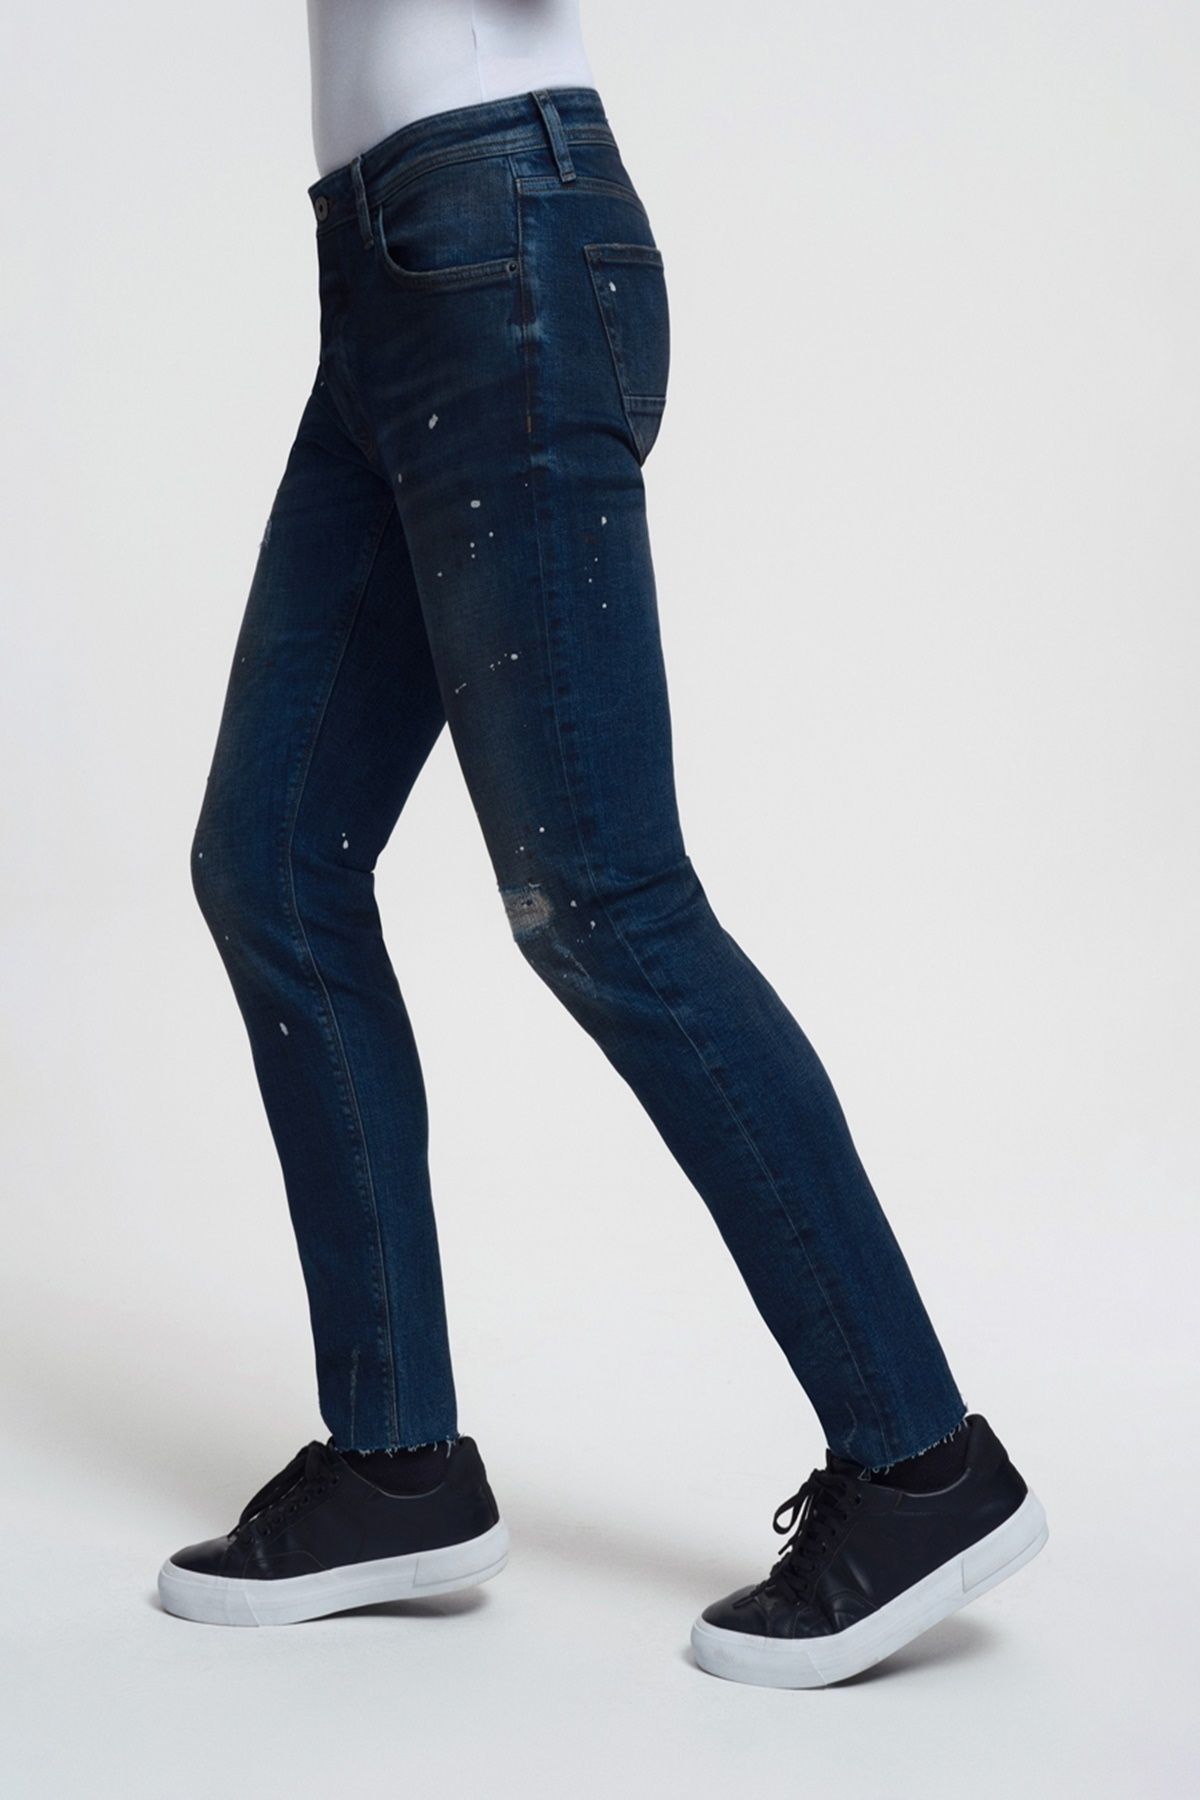 Loft 2033755 مردان آبی Ricardo Slim مناسب کمر طبیعی پاره شده نقاشی شلوار جین های تفصیلی